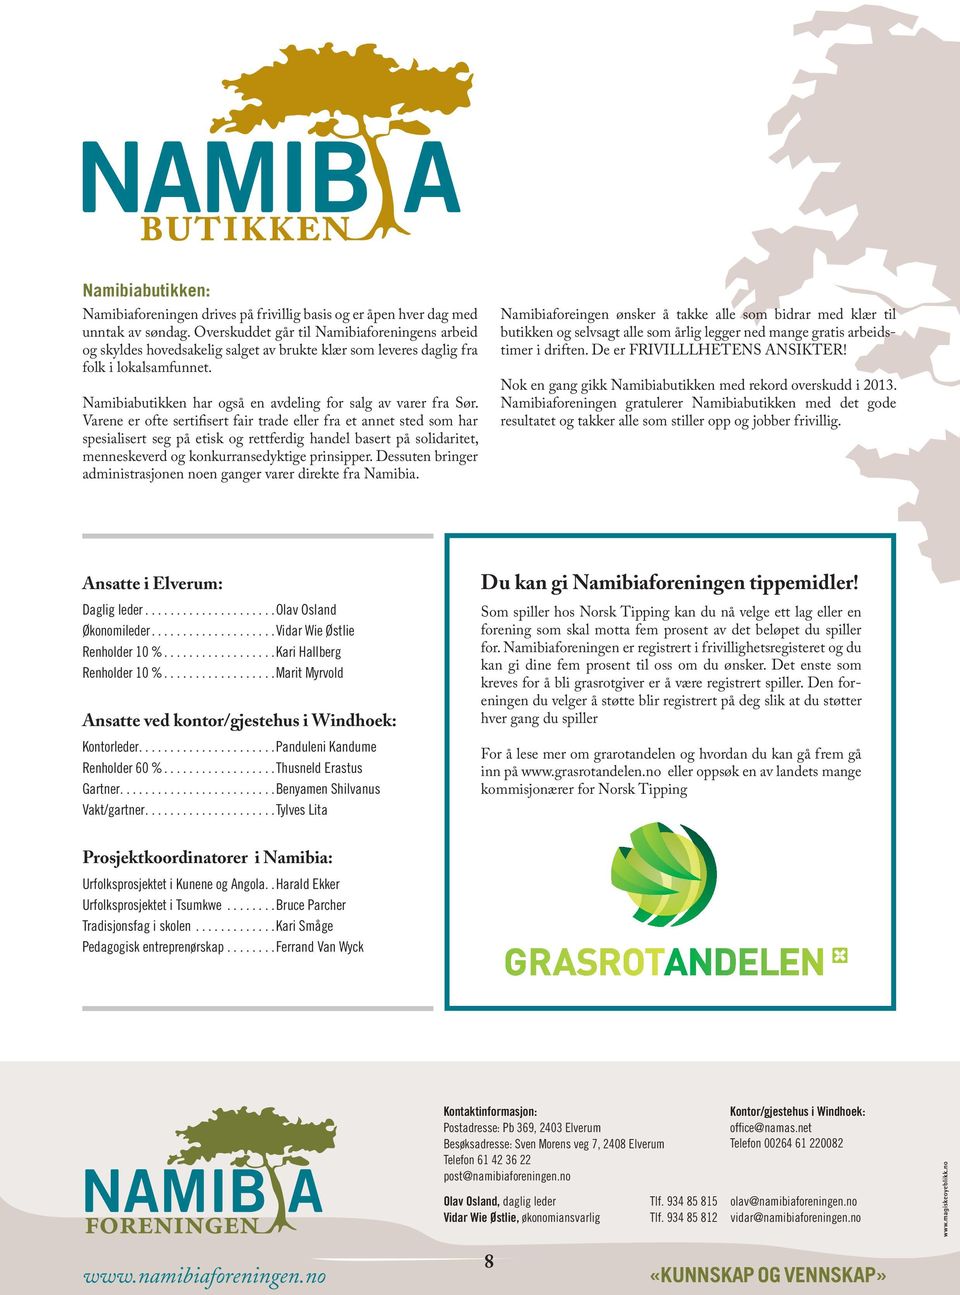 Namibiabutikken har også en avdeling for salg av varer fra Sør.